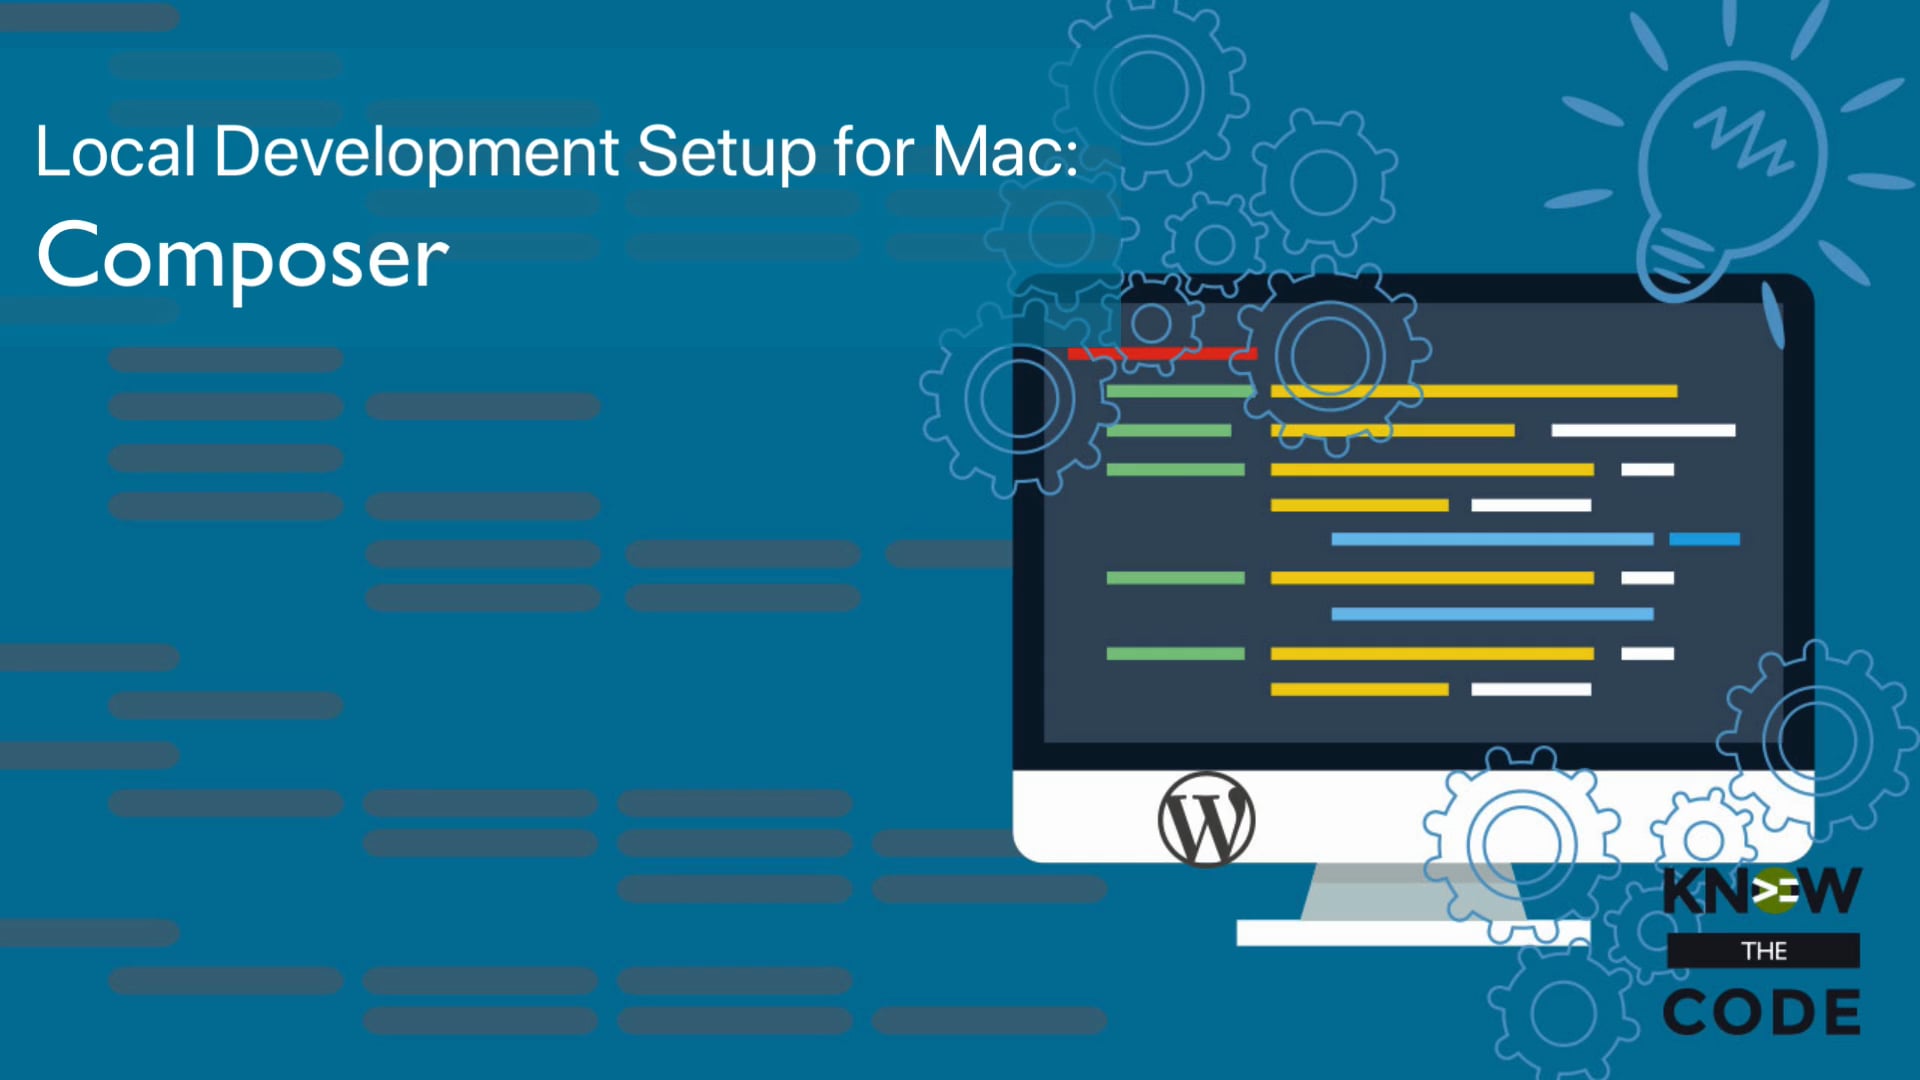 Composer – Local Development Setup for Mac